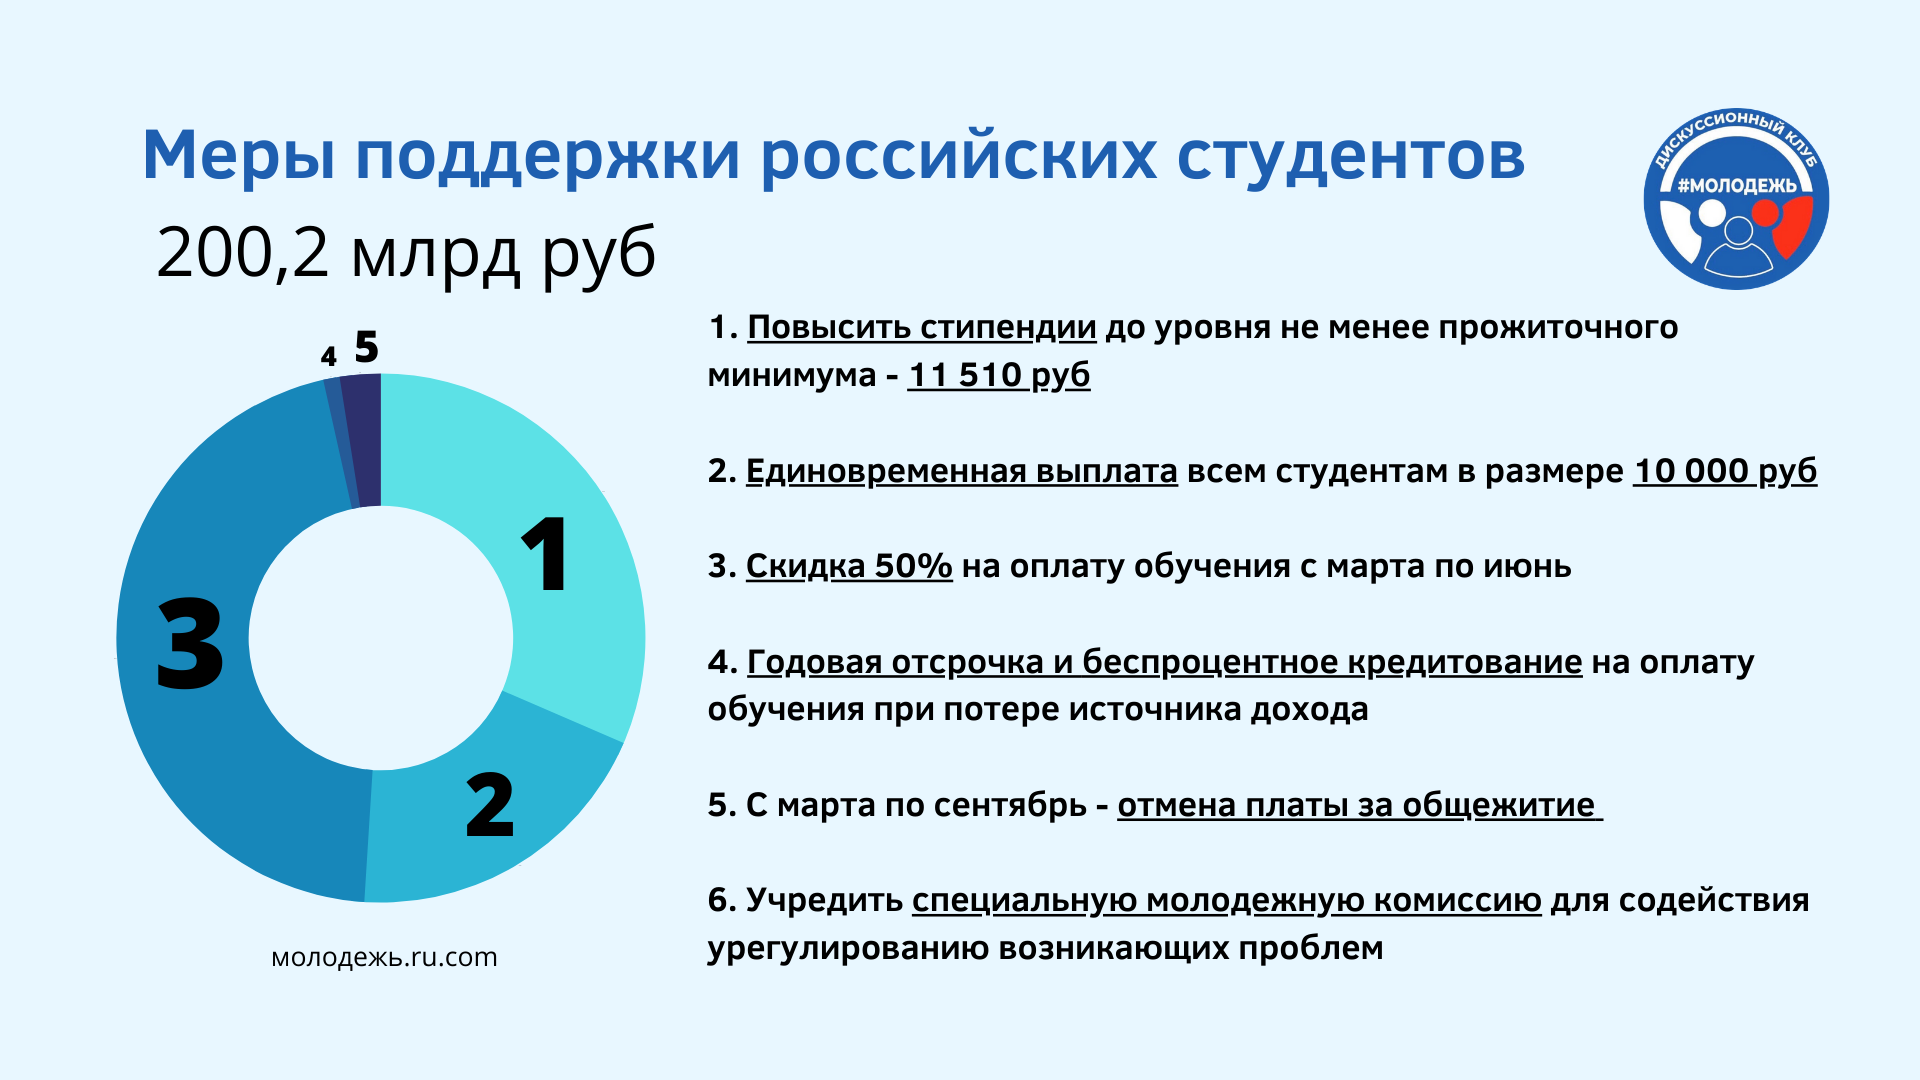 6 мер поддержки российских студентов в связи с последствиями пандемии COVID-19